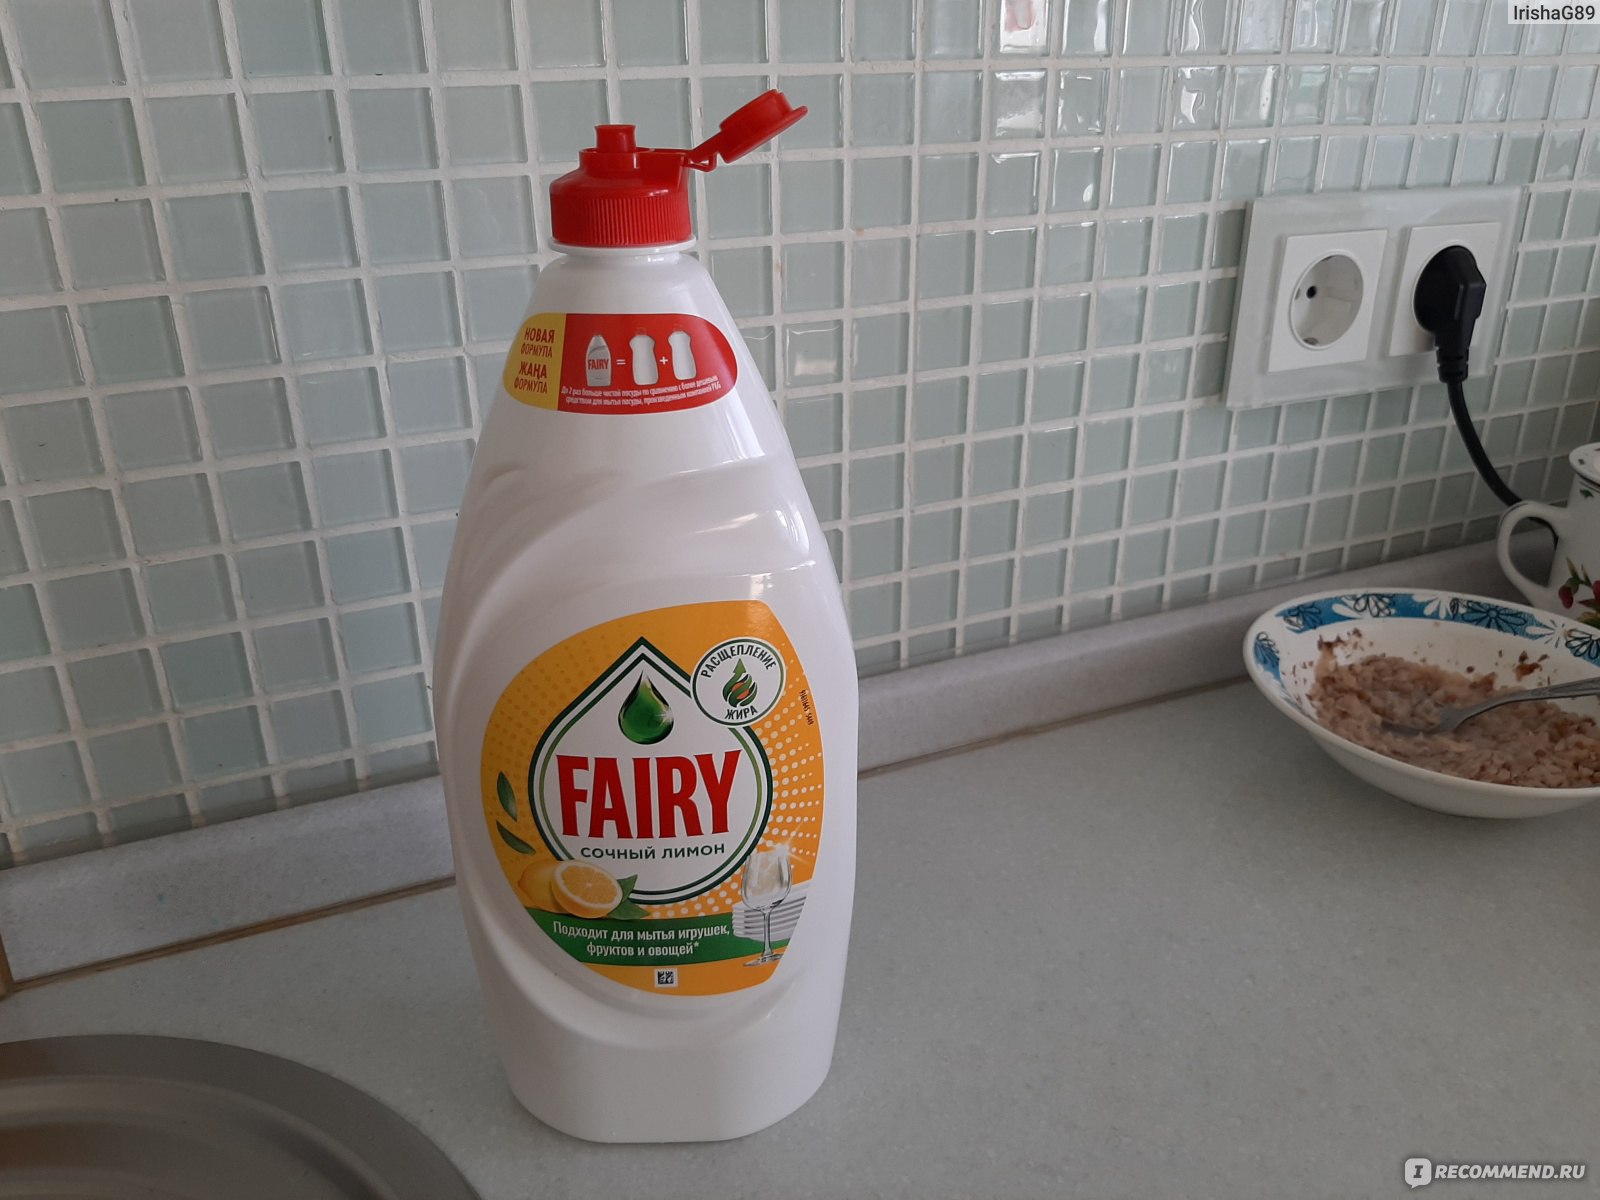 Средство для мытья посуды fairy сочный лимон. Средства для жирной посуды. Средство для жирной посуды лучшее мытья. Fairy средство для мытья посуды сочный лимон 650мл. Средство для мытья посуды "Fairy" "сочный лимон", 1.35л.